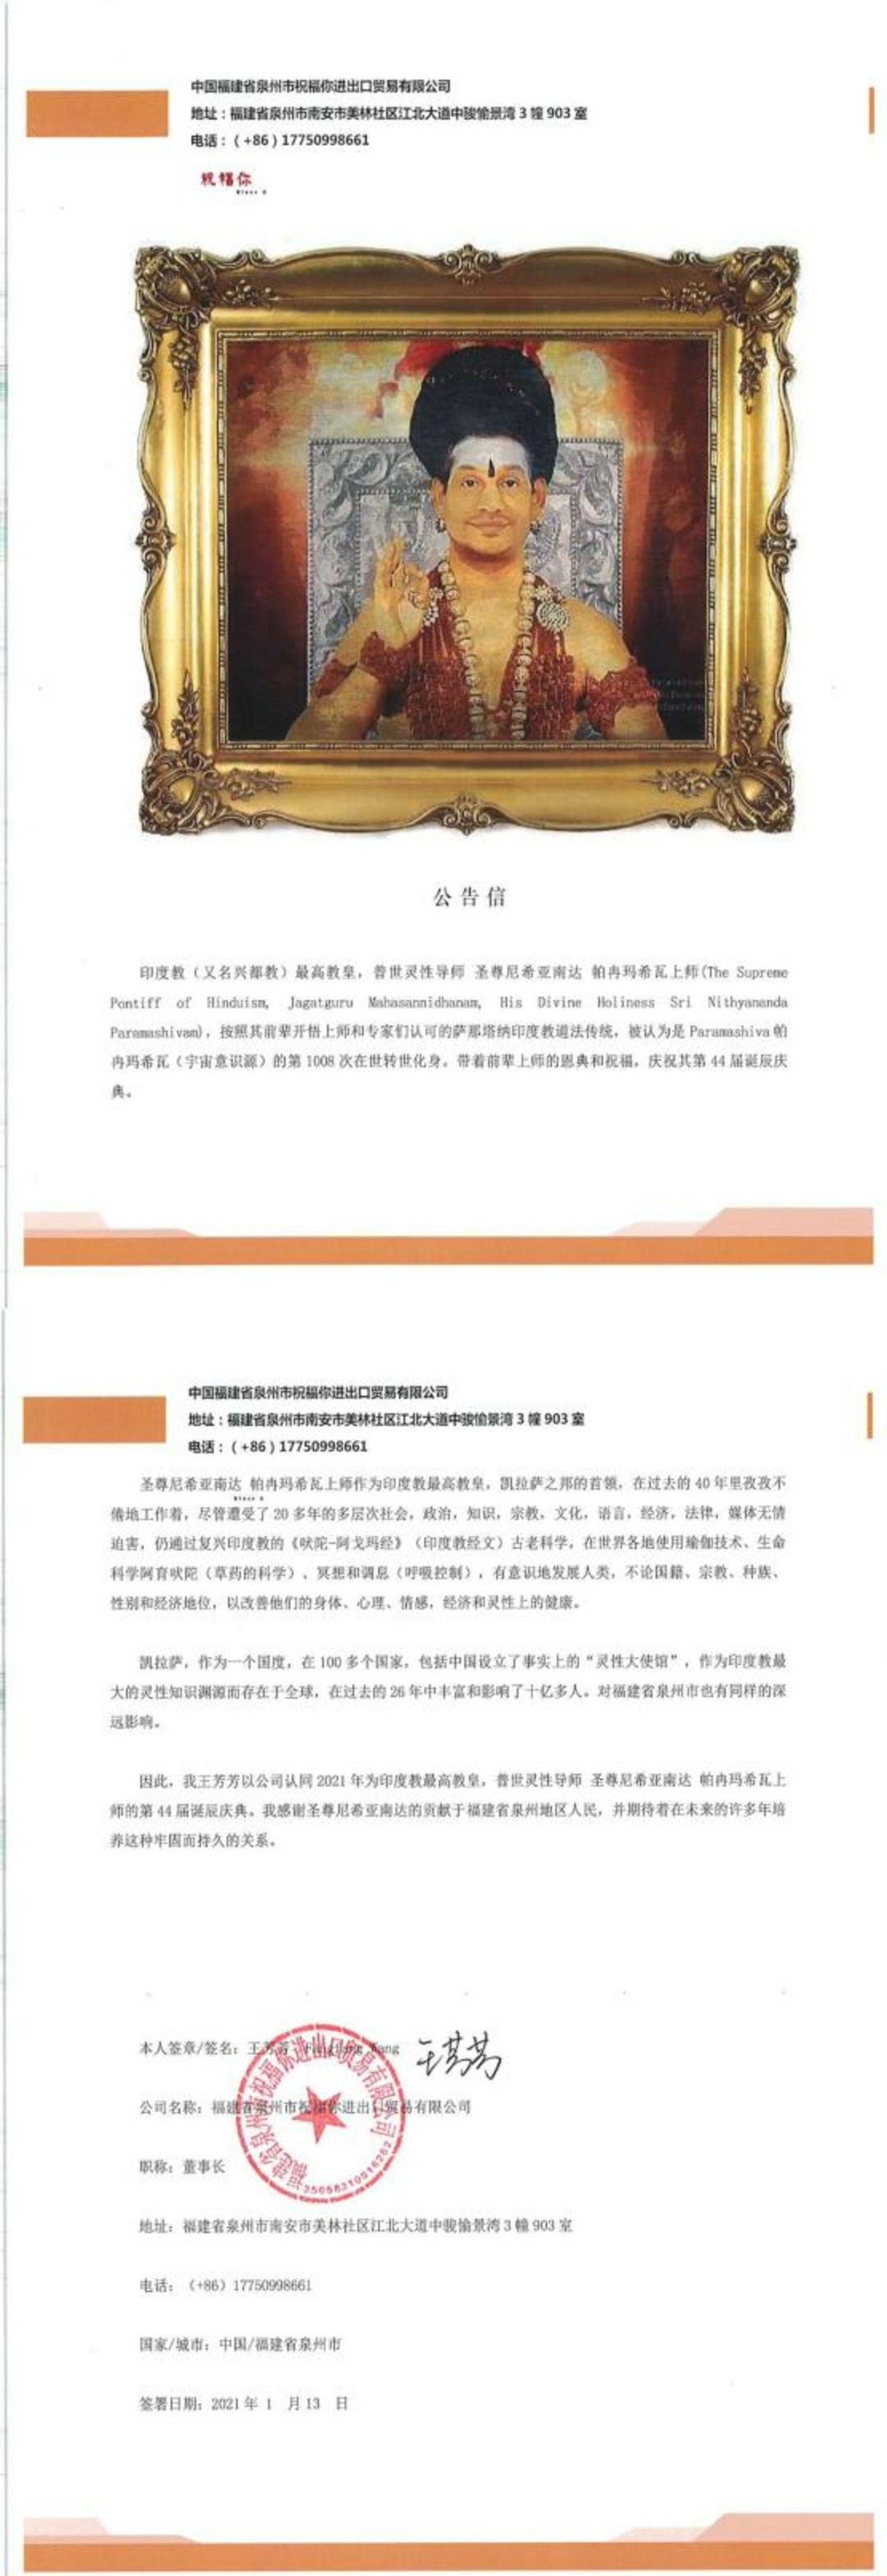 China---Fang-Fang-Wang---13-Jan-2021-(Proclamation)-10Y0gMig2we7ndgmy3PjZgHXCsta62TYE.pdf